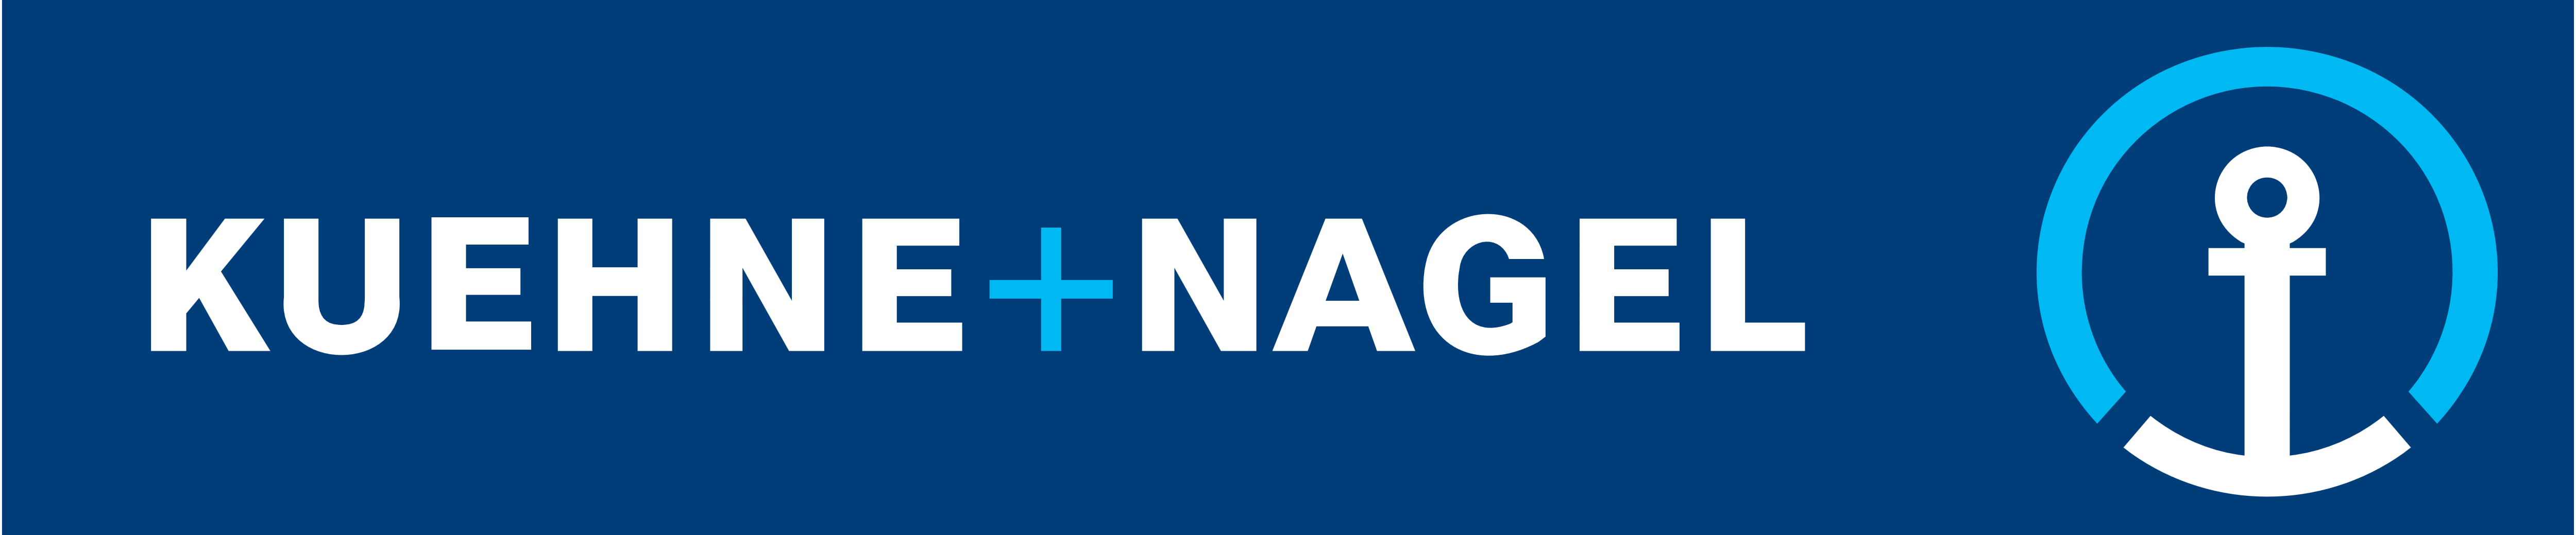 Kuehne Nagel Logos Download